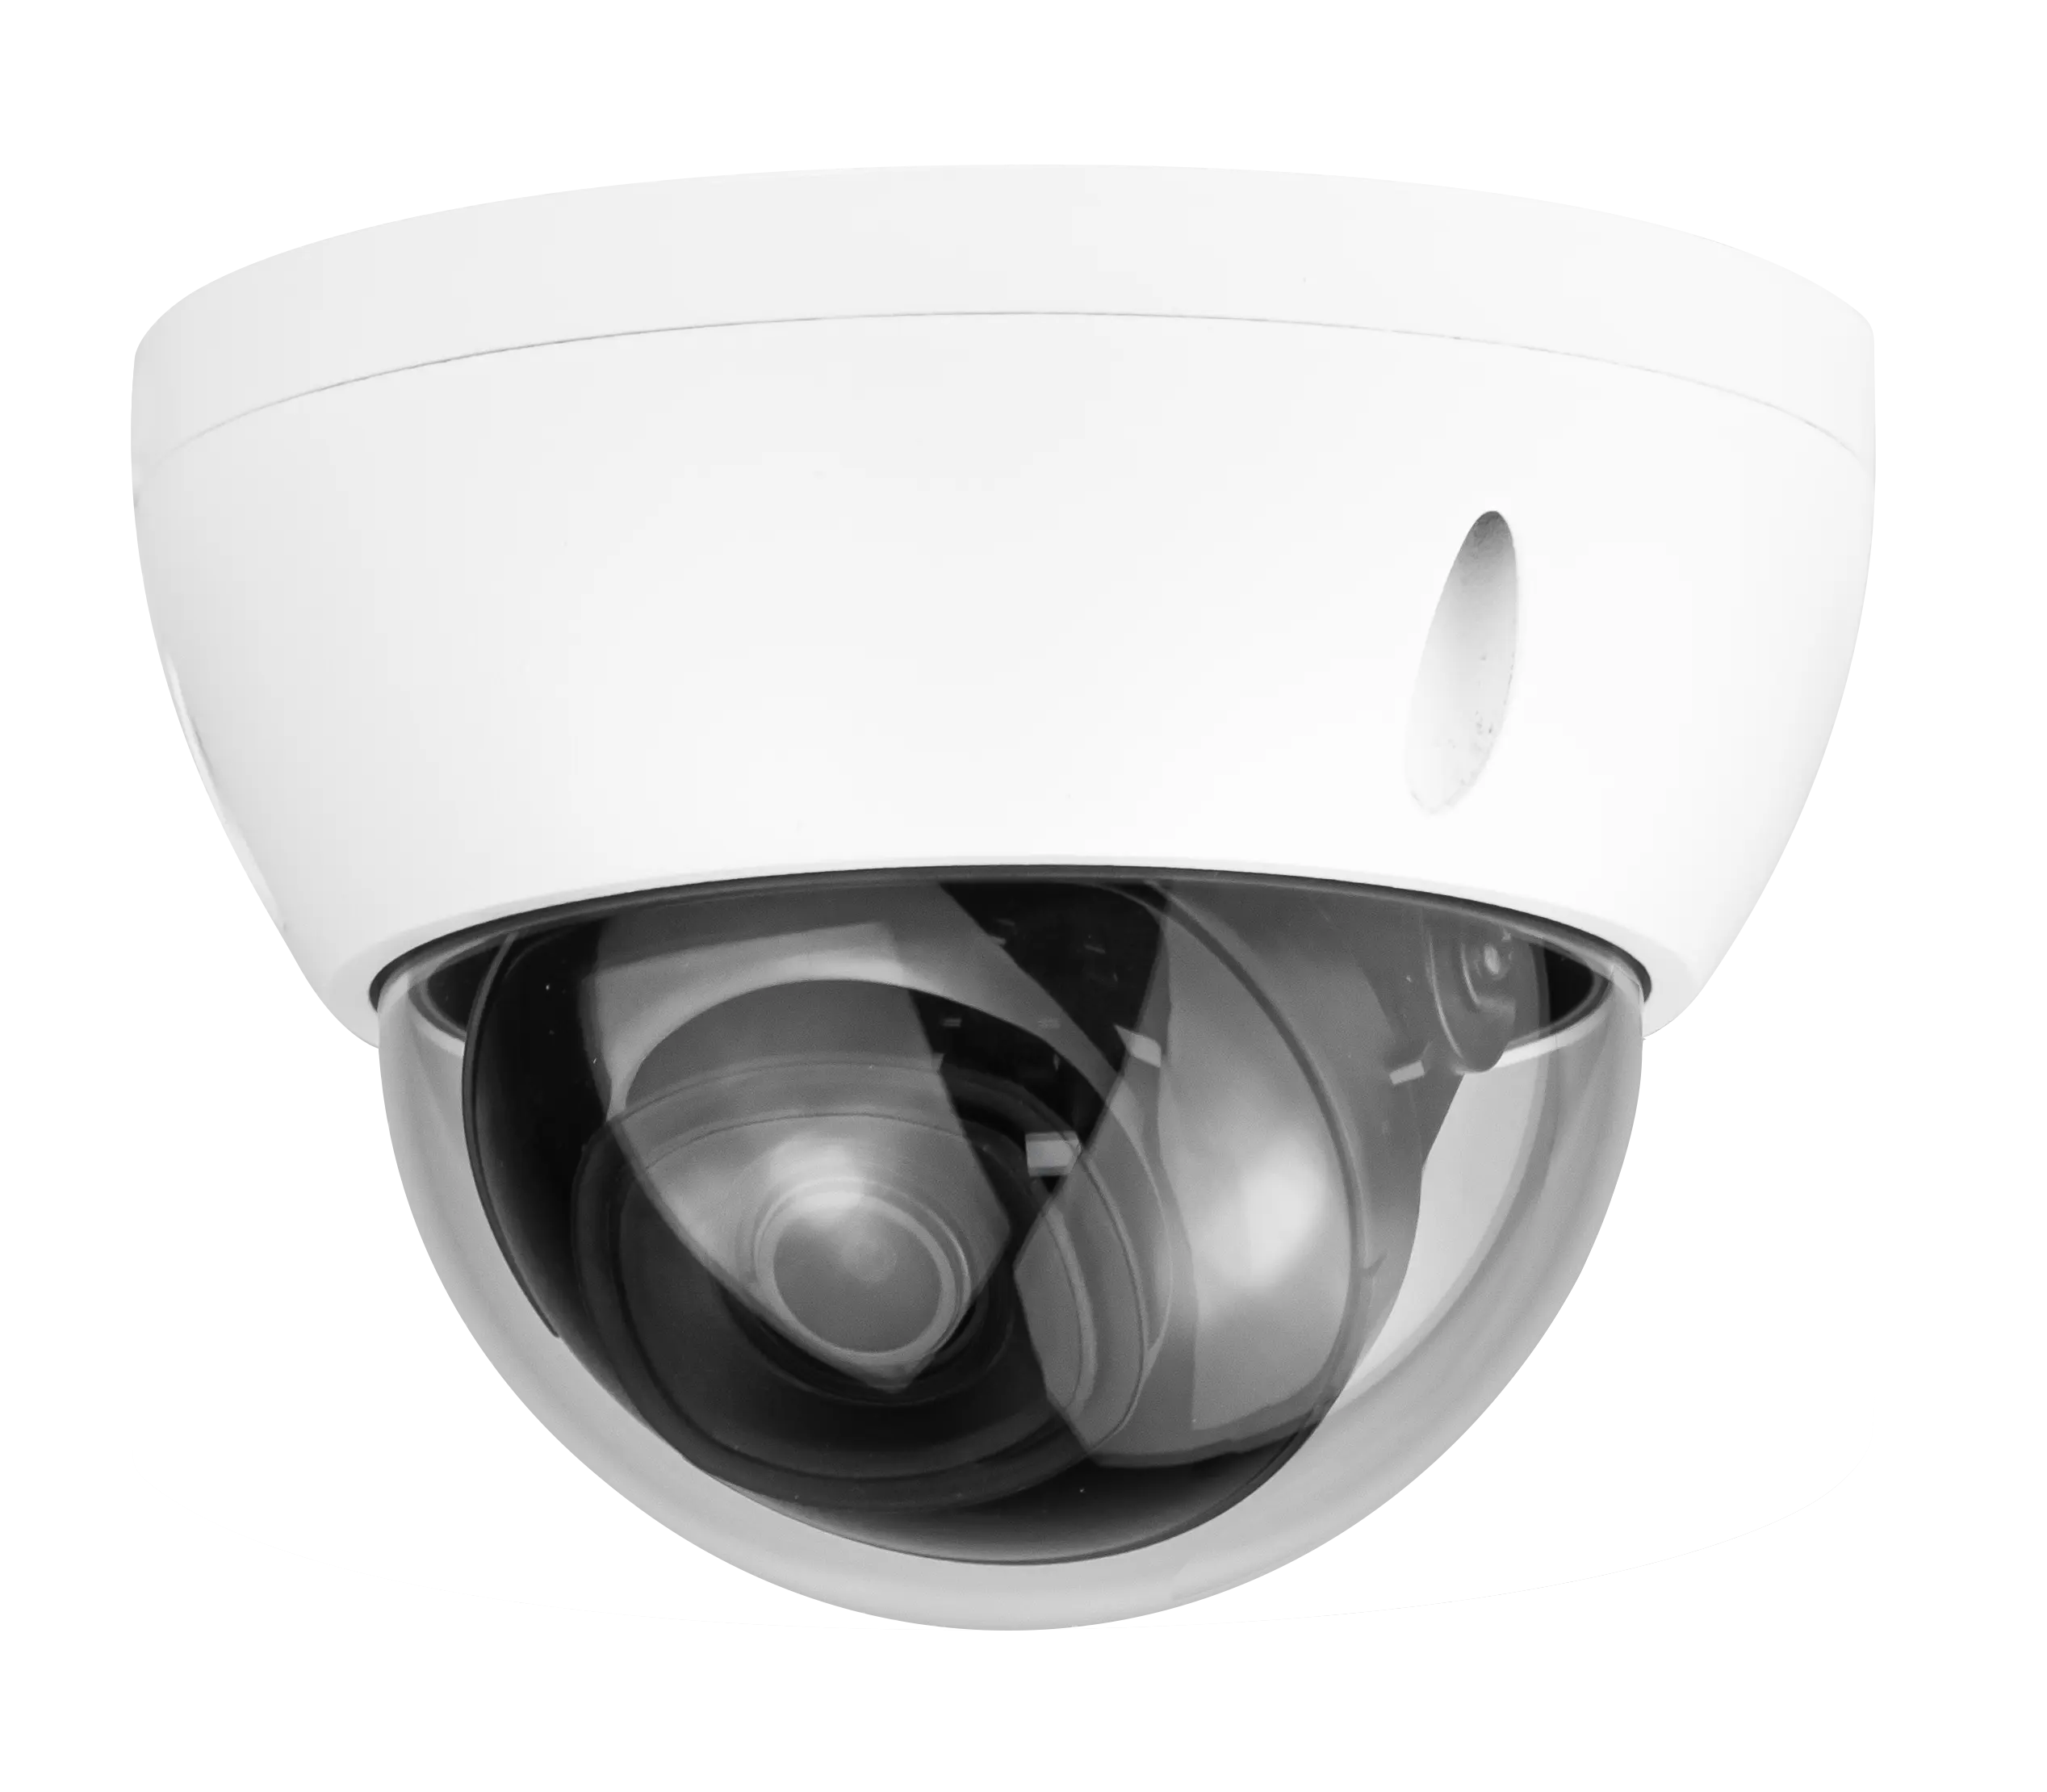 Dahu esterna mini casa telecamera di sorveglianza di rete 3MP senza fili del cctv di wifi ipcamera indoor dome ptz di sicurezza macchina fotografica del ip